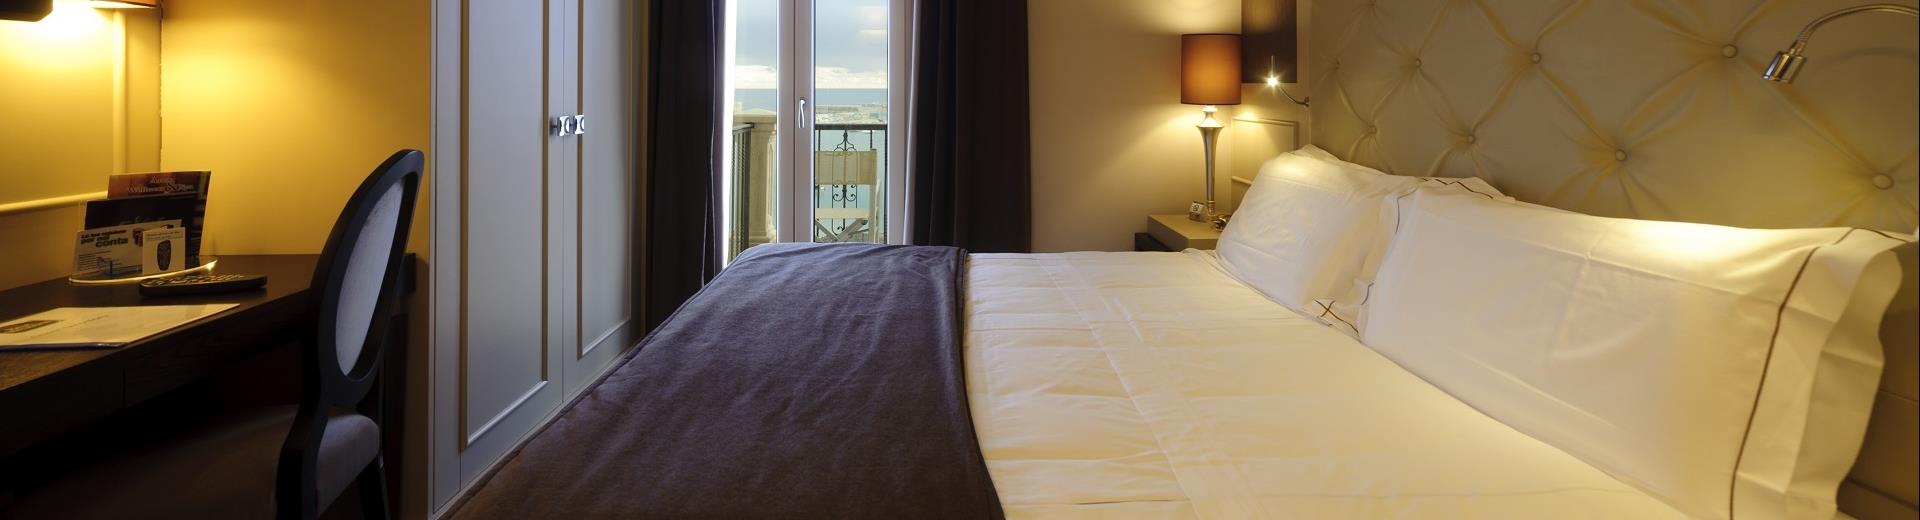 Camera superior nel Best Western Hotel Perla del Porto a Catanzaro Lido